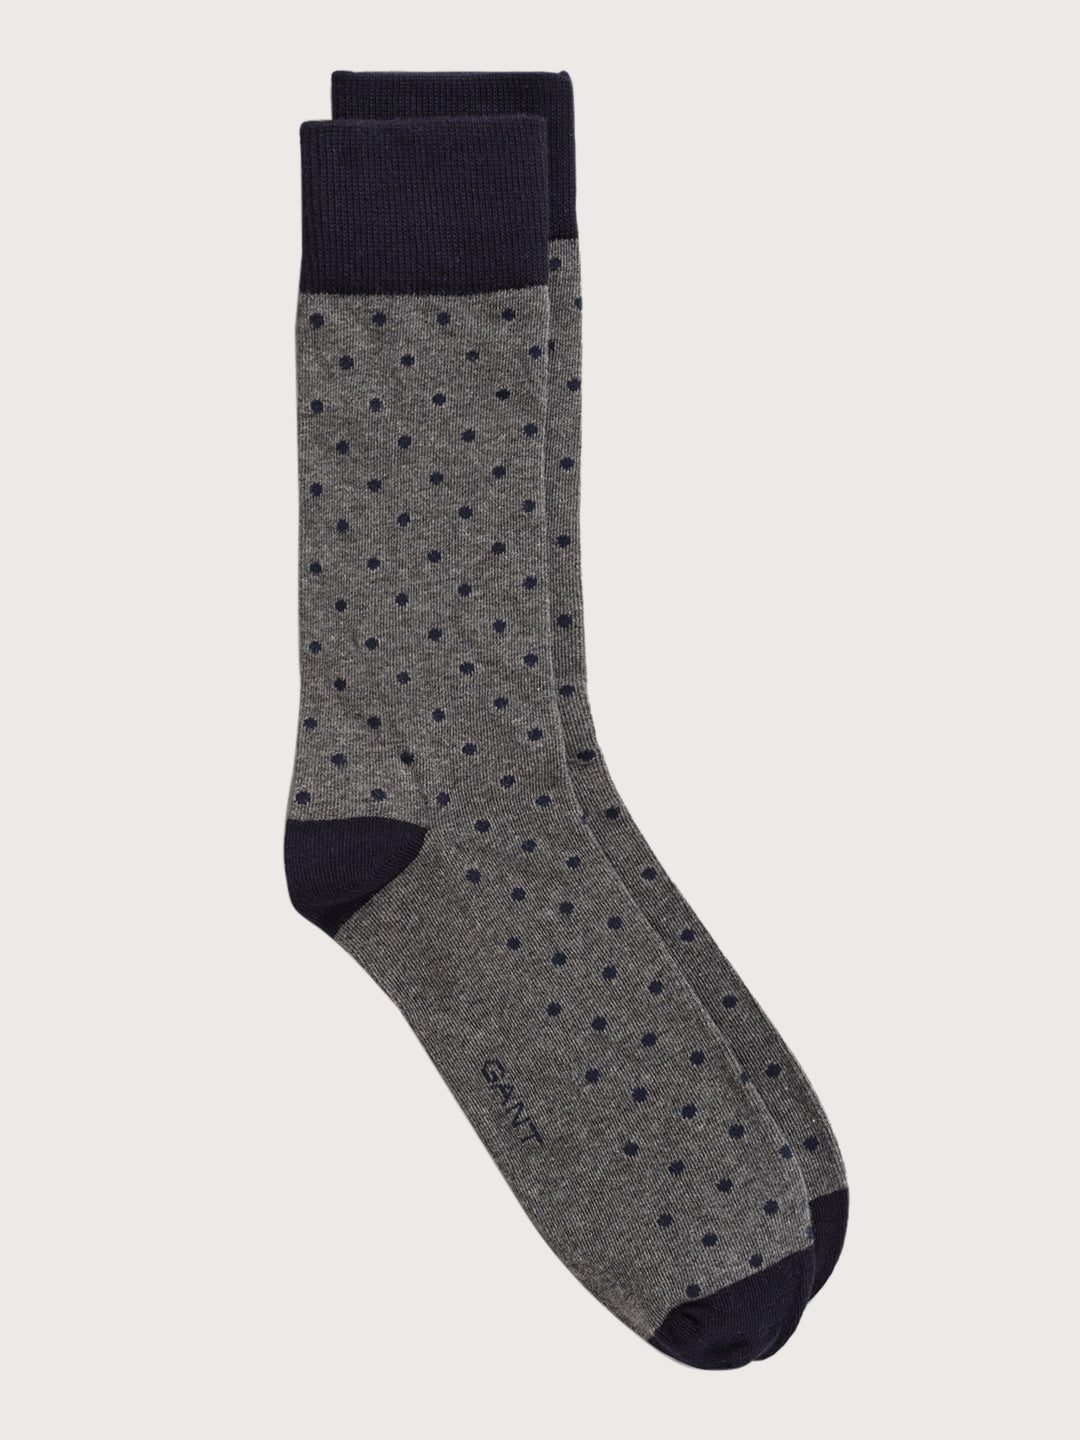 Gant Pack of 2 Patterned Above Knee Length Socks